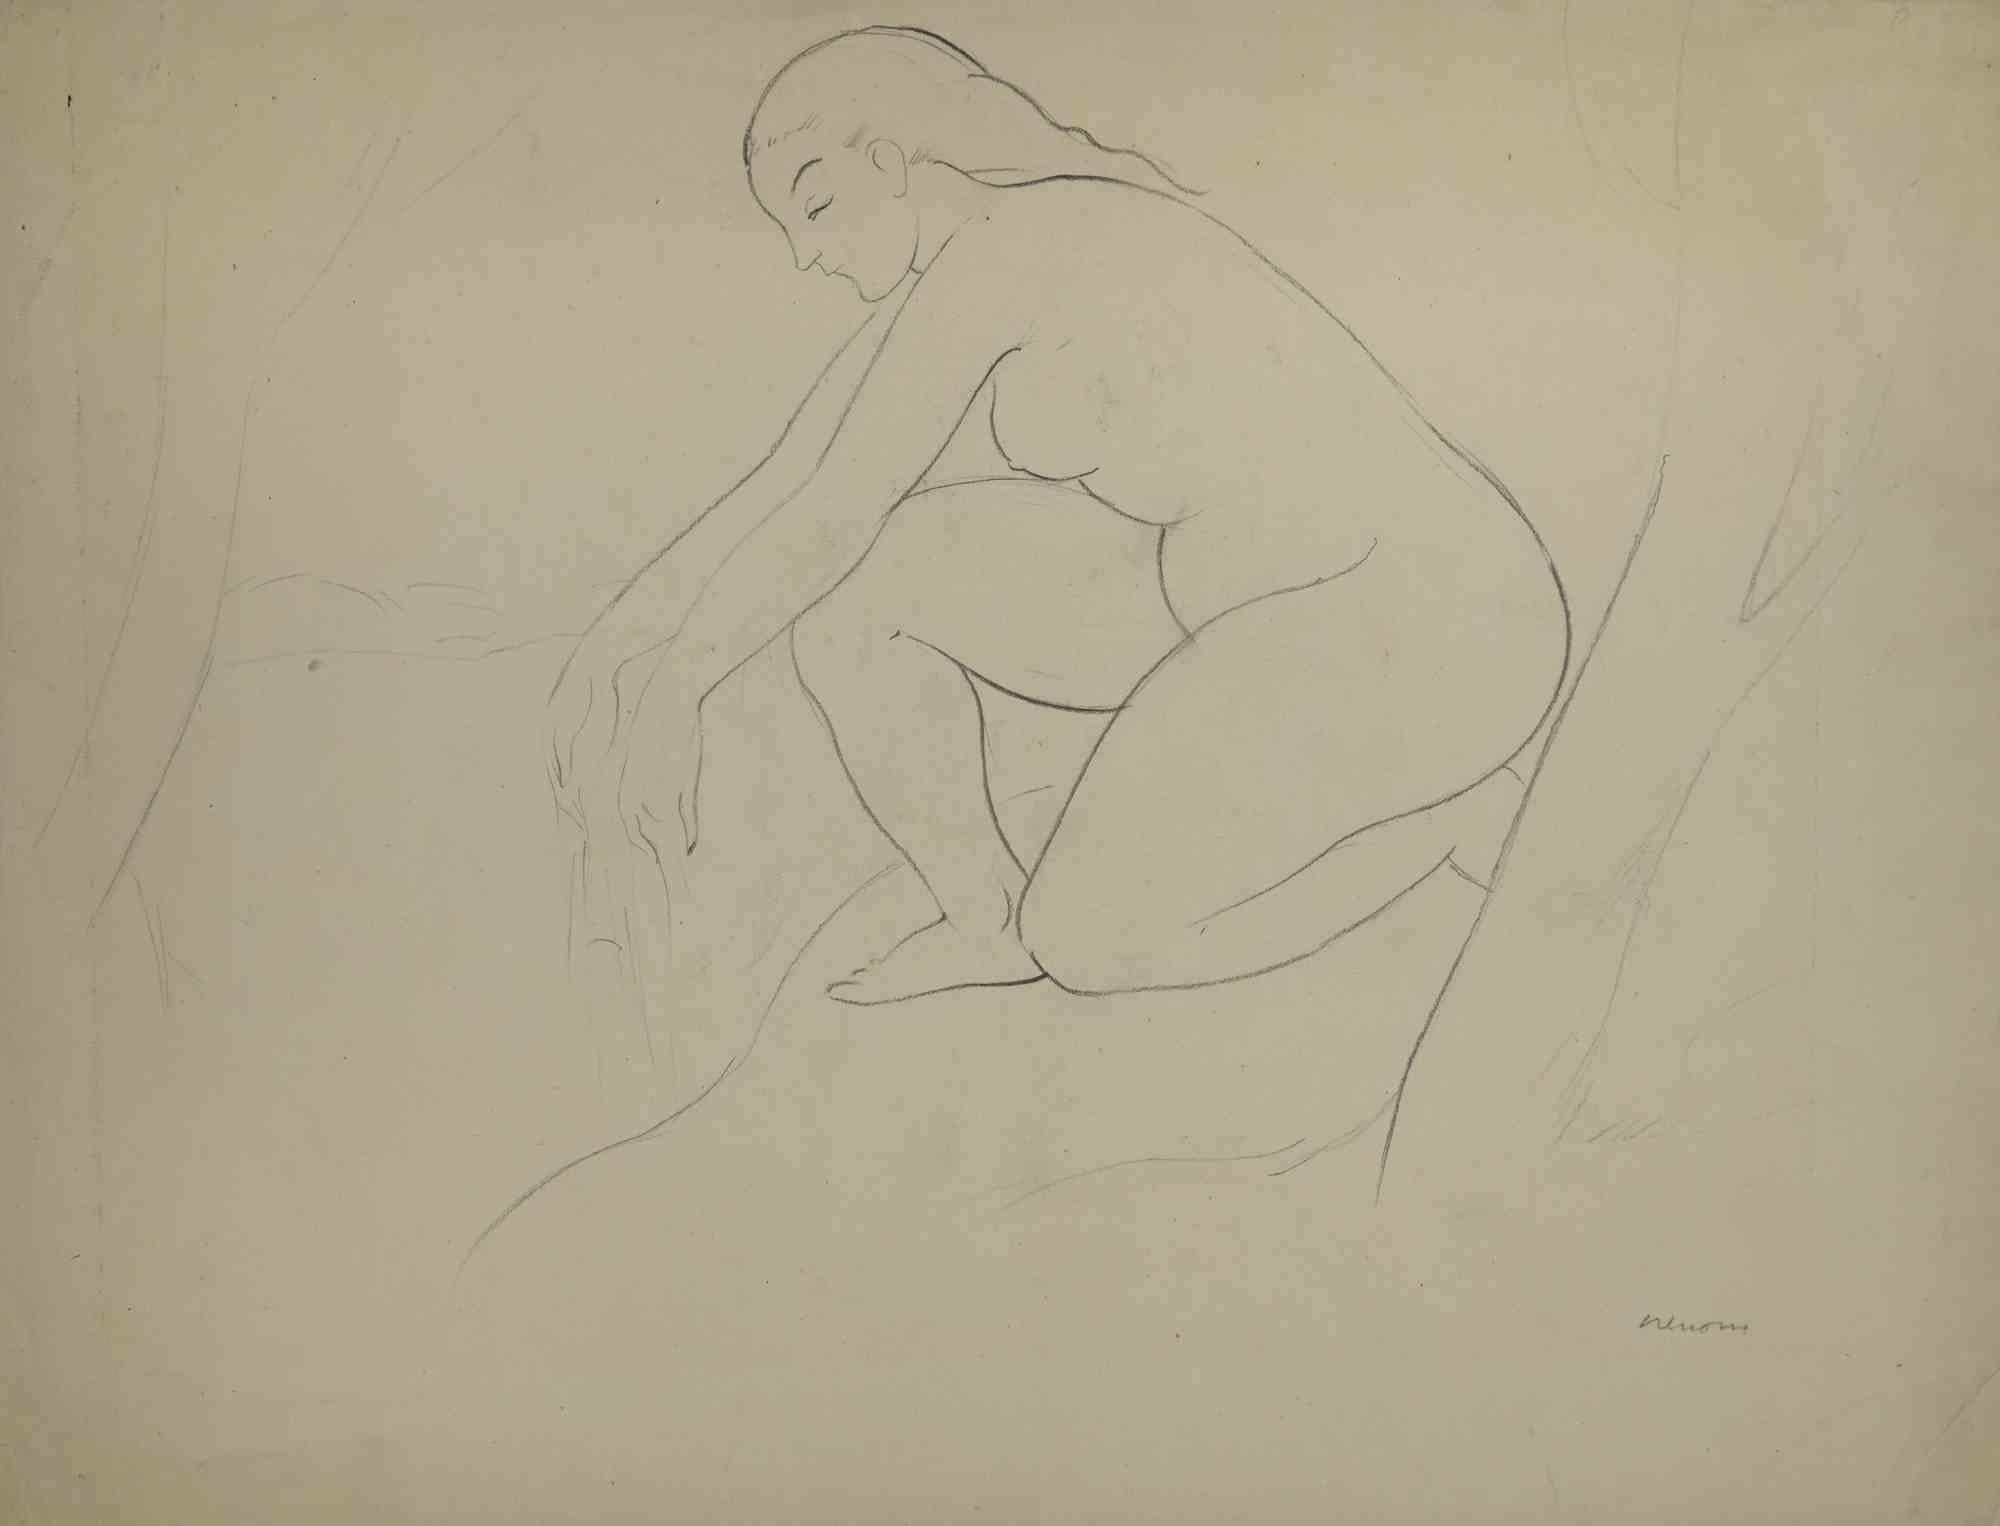 Sans titre est une œuvre d'art réalisée par l'artiste espagnol Miquel Renom (1912-1984) .

Dessin sur papier. Signé à la main dans le coin droit.

L'artiste veut définir une composition équilibrée, par la précision et la congruence des couleurs